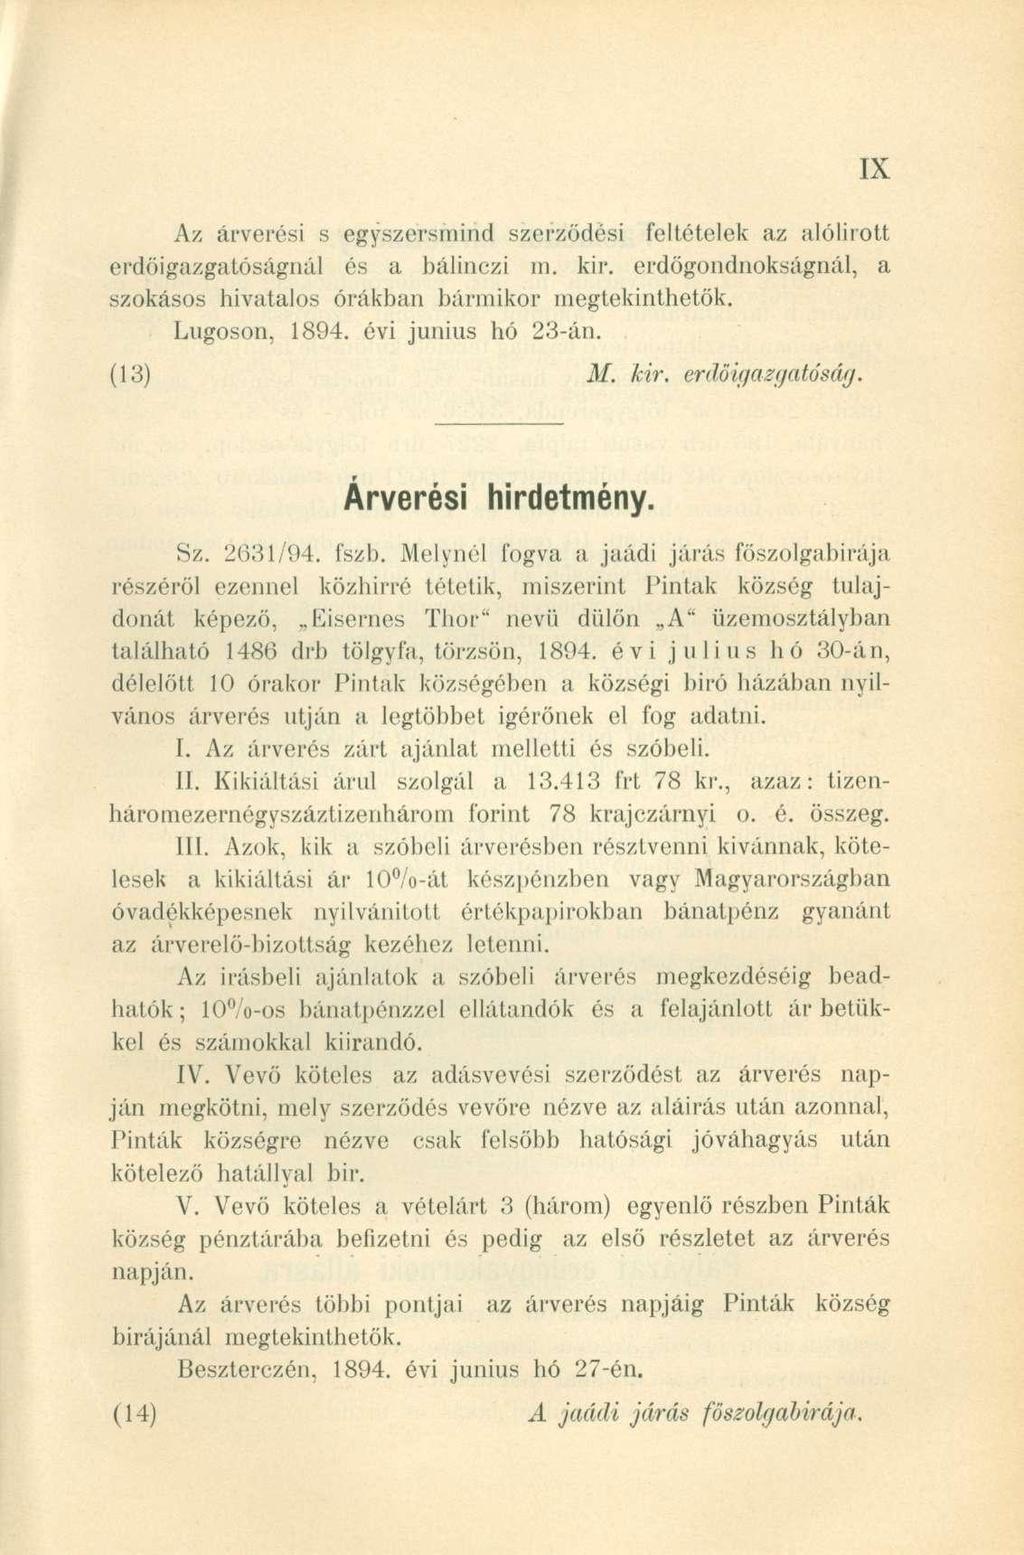 Az árverési s egyszersmind szerződési feltételek az alólirott erdöigazgatóságnál és a bálinczi in. kir. erdőgondnokságnál, a szokásos hivatalos órákban bármikor megtekinthetők. Lúgoson, 1894.